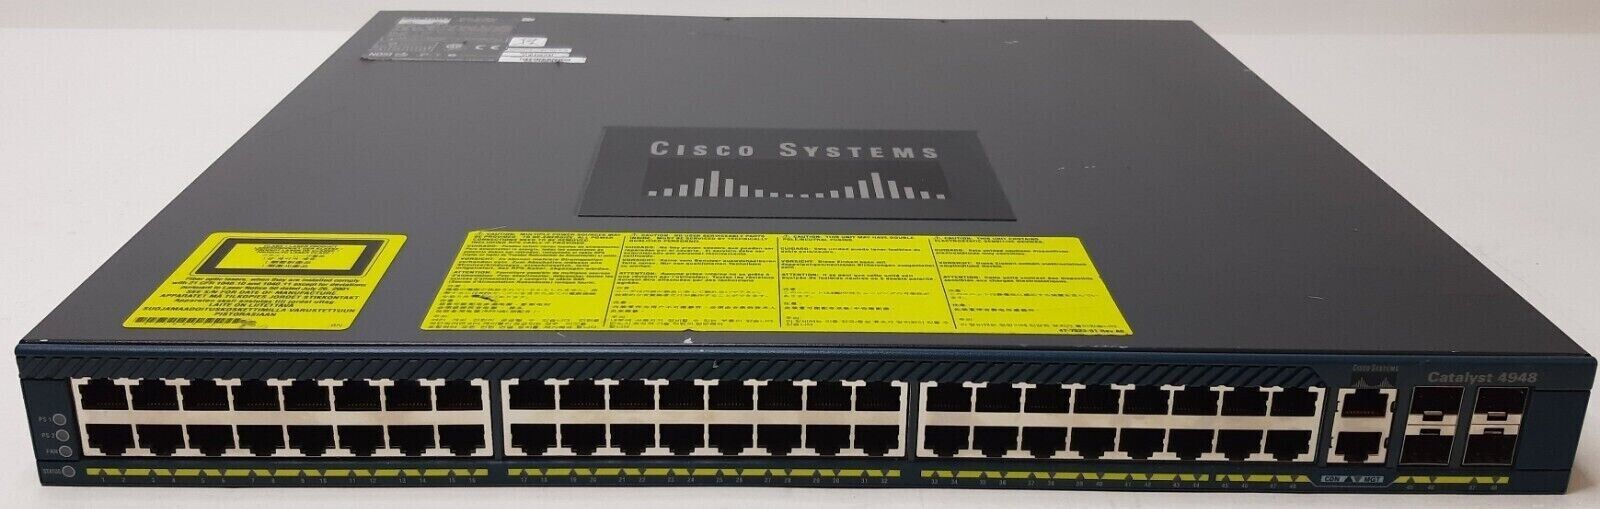 Cisco Catalyst 4948 WS-C4948-S  48 Port Gigabit Switch